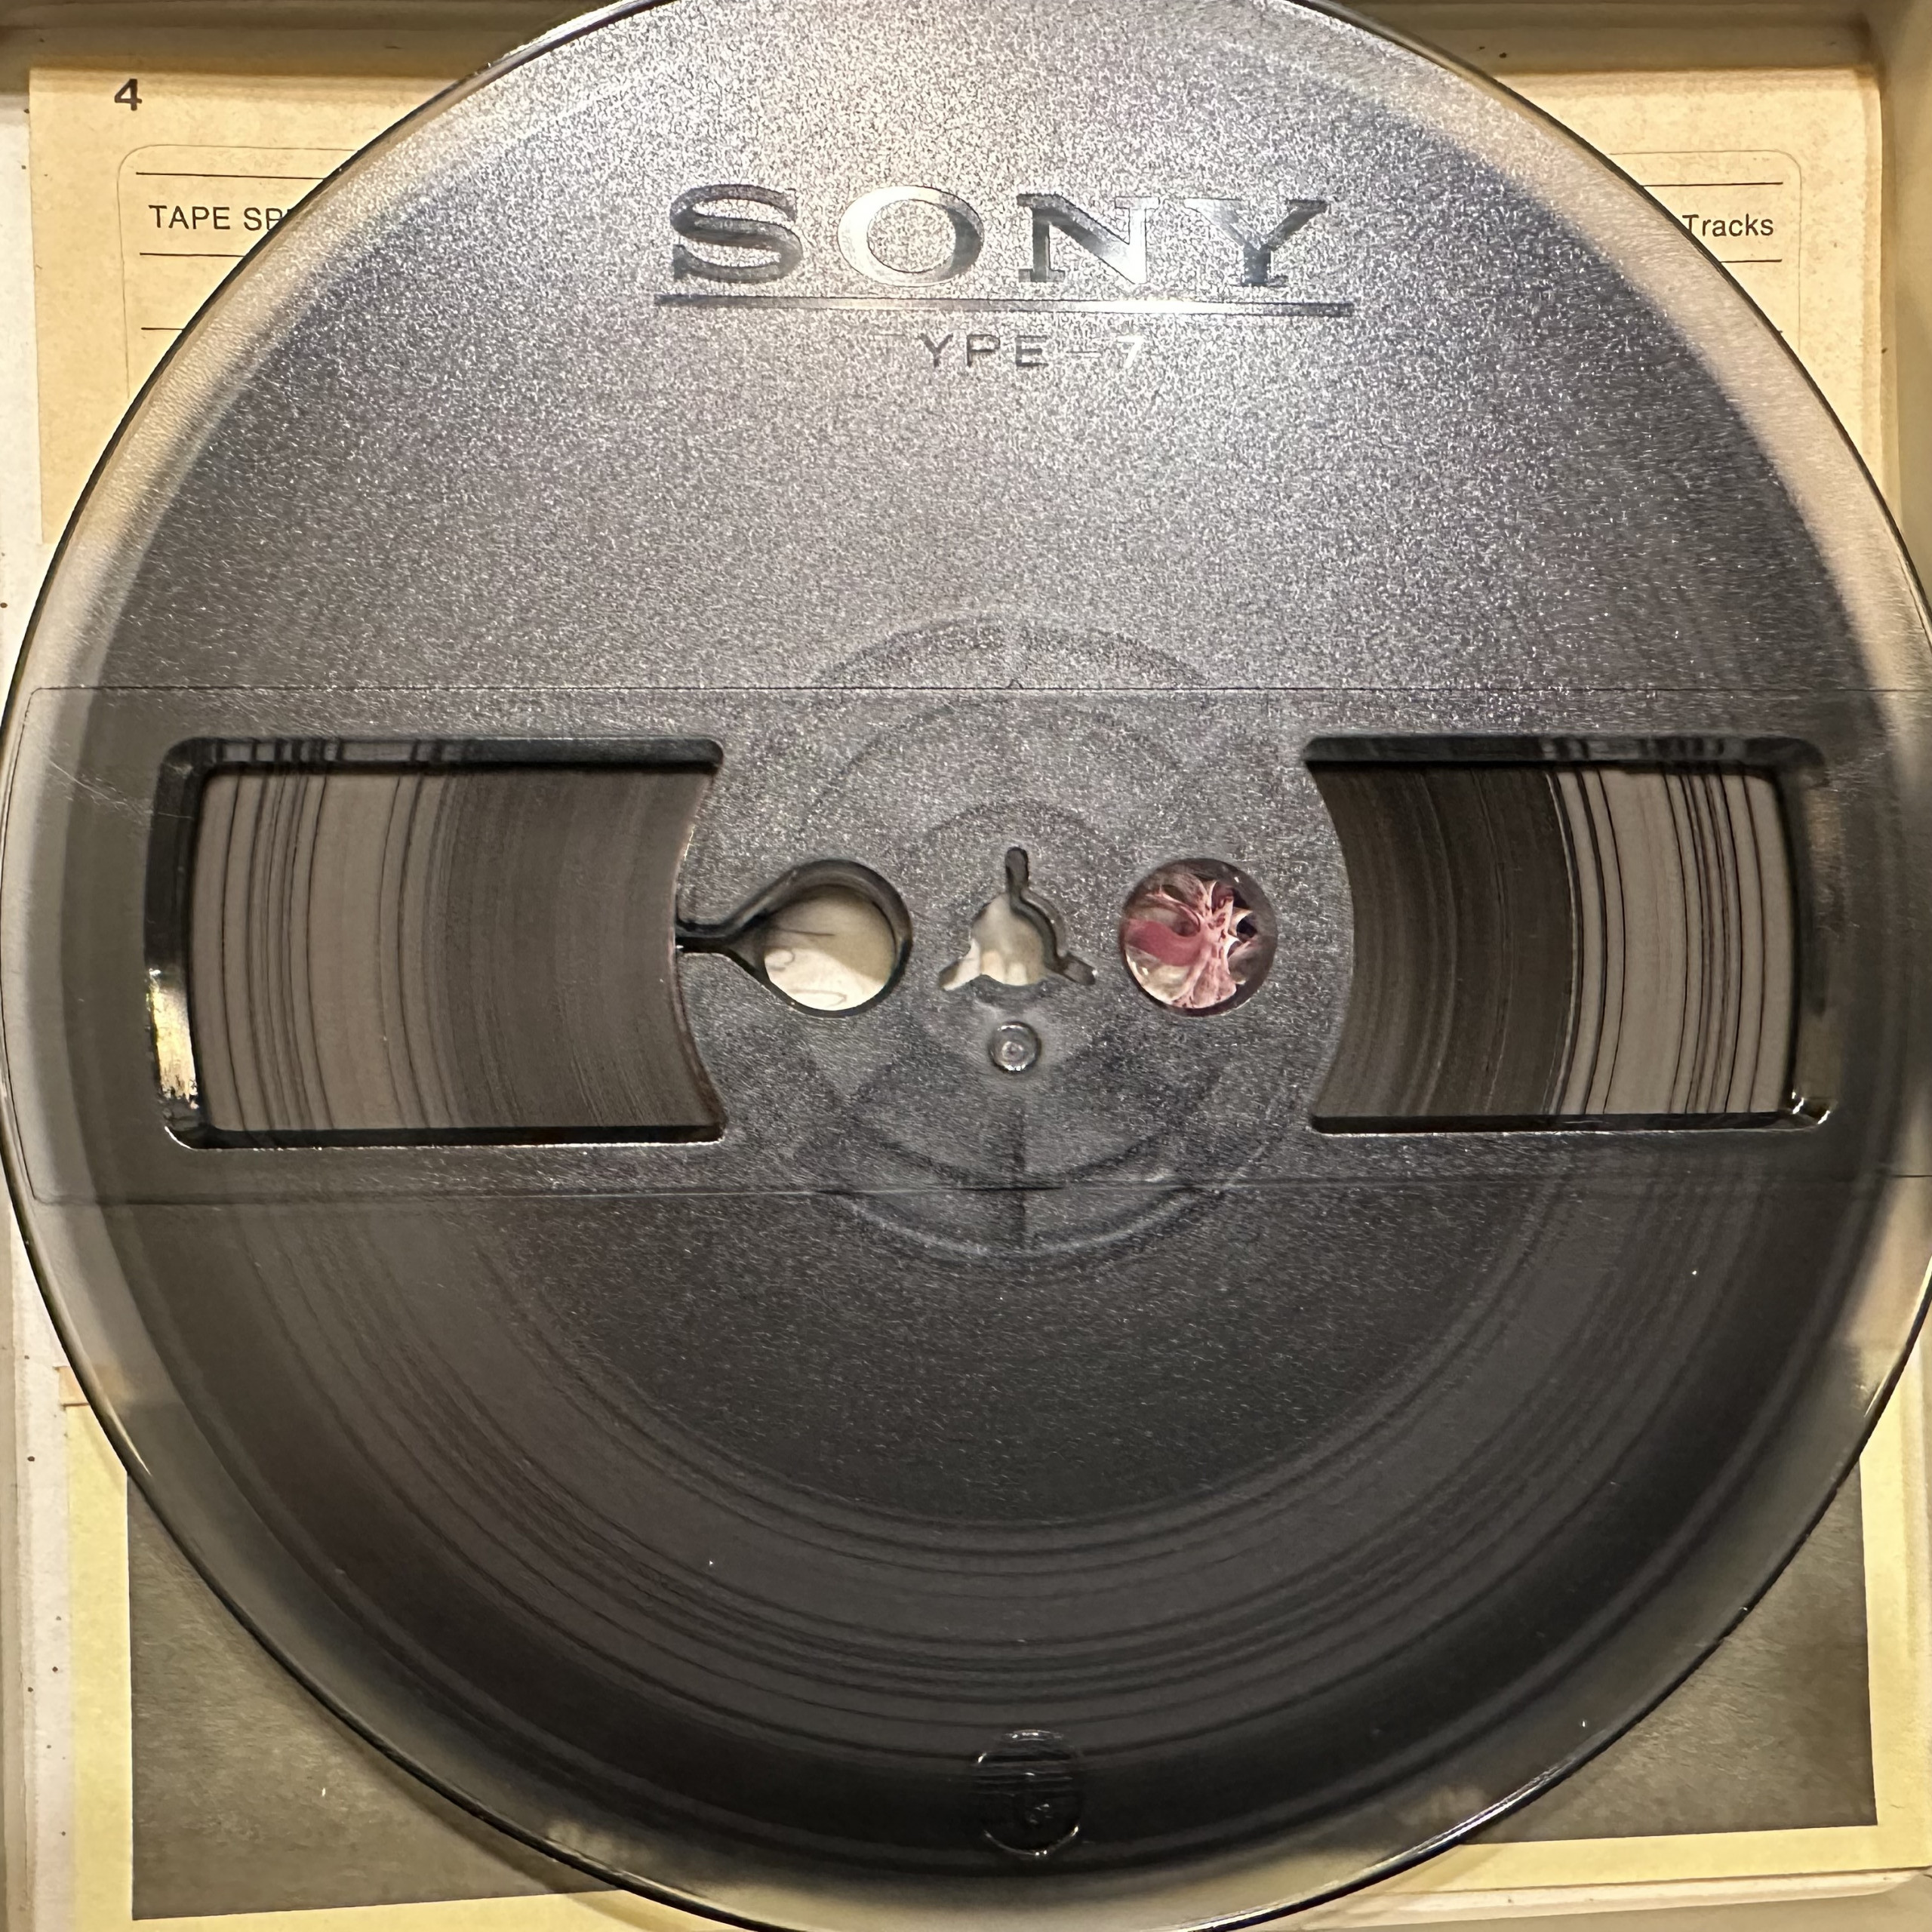 Sony-FeCr-7-in-Tape-Reel